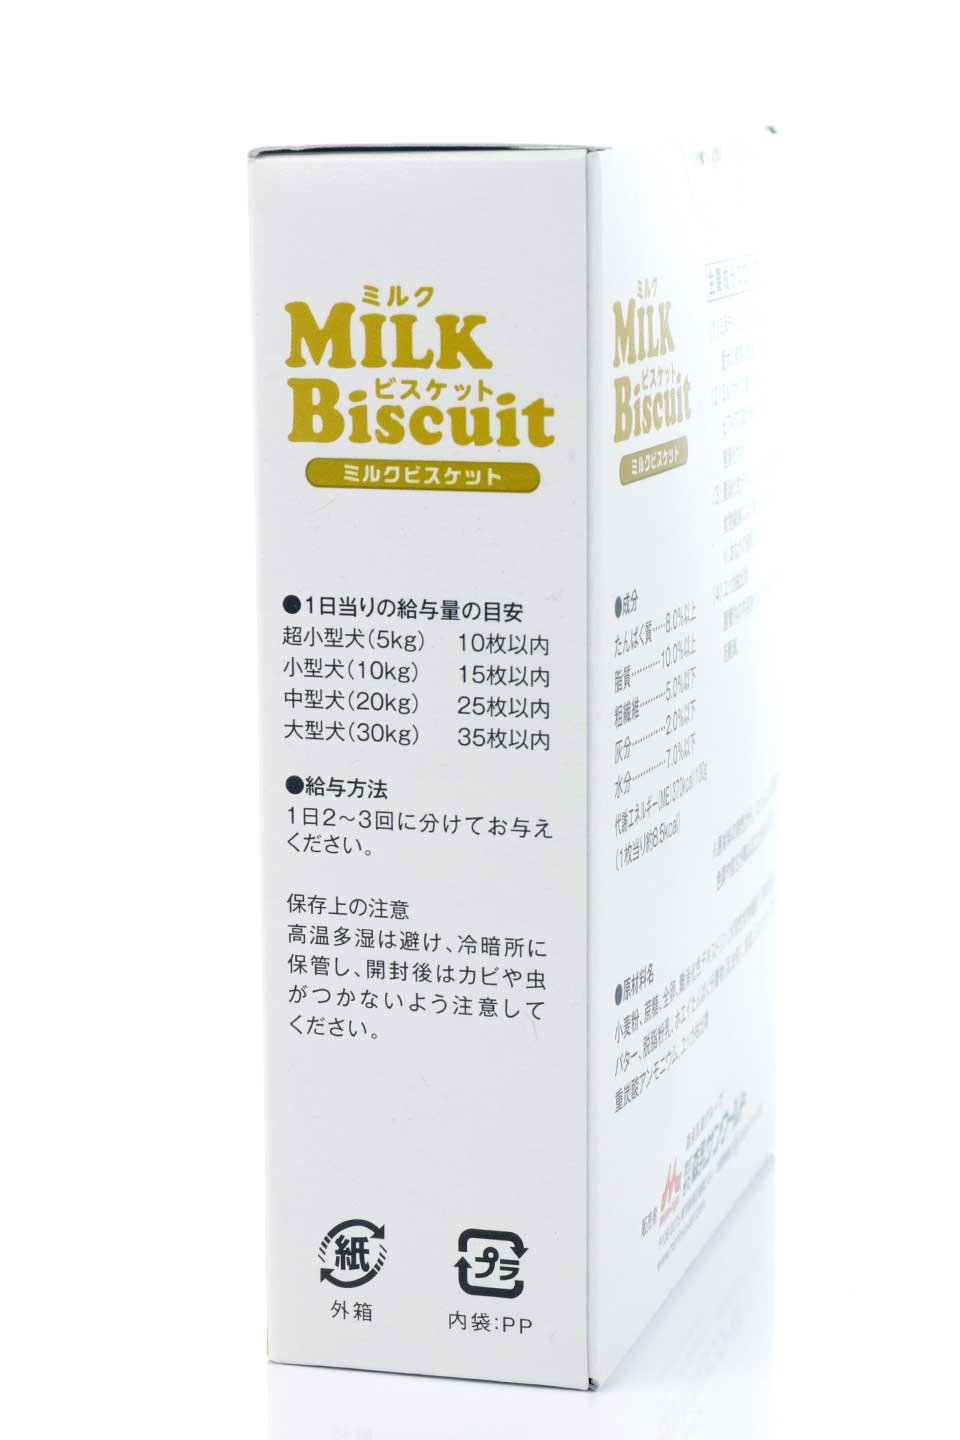 MilkBiscuitミルクビスケットのドッググッズやオヤツ。ワンちゃんも大喜びの本格派、森乳のミルクビスケット。森永乳業のペットフード部門の人気オヤツです。/thumb-3